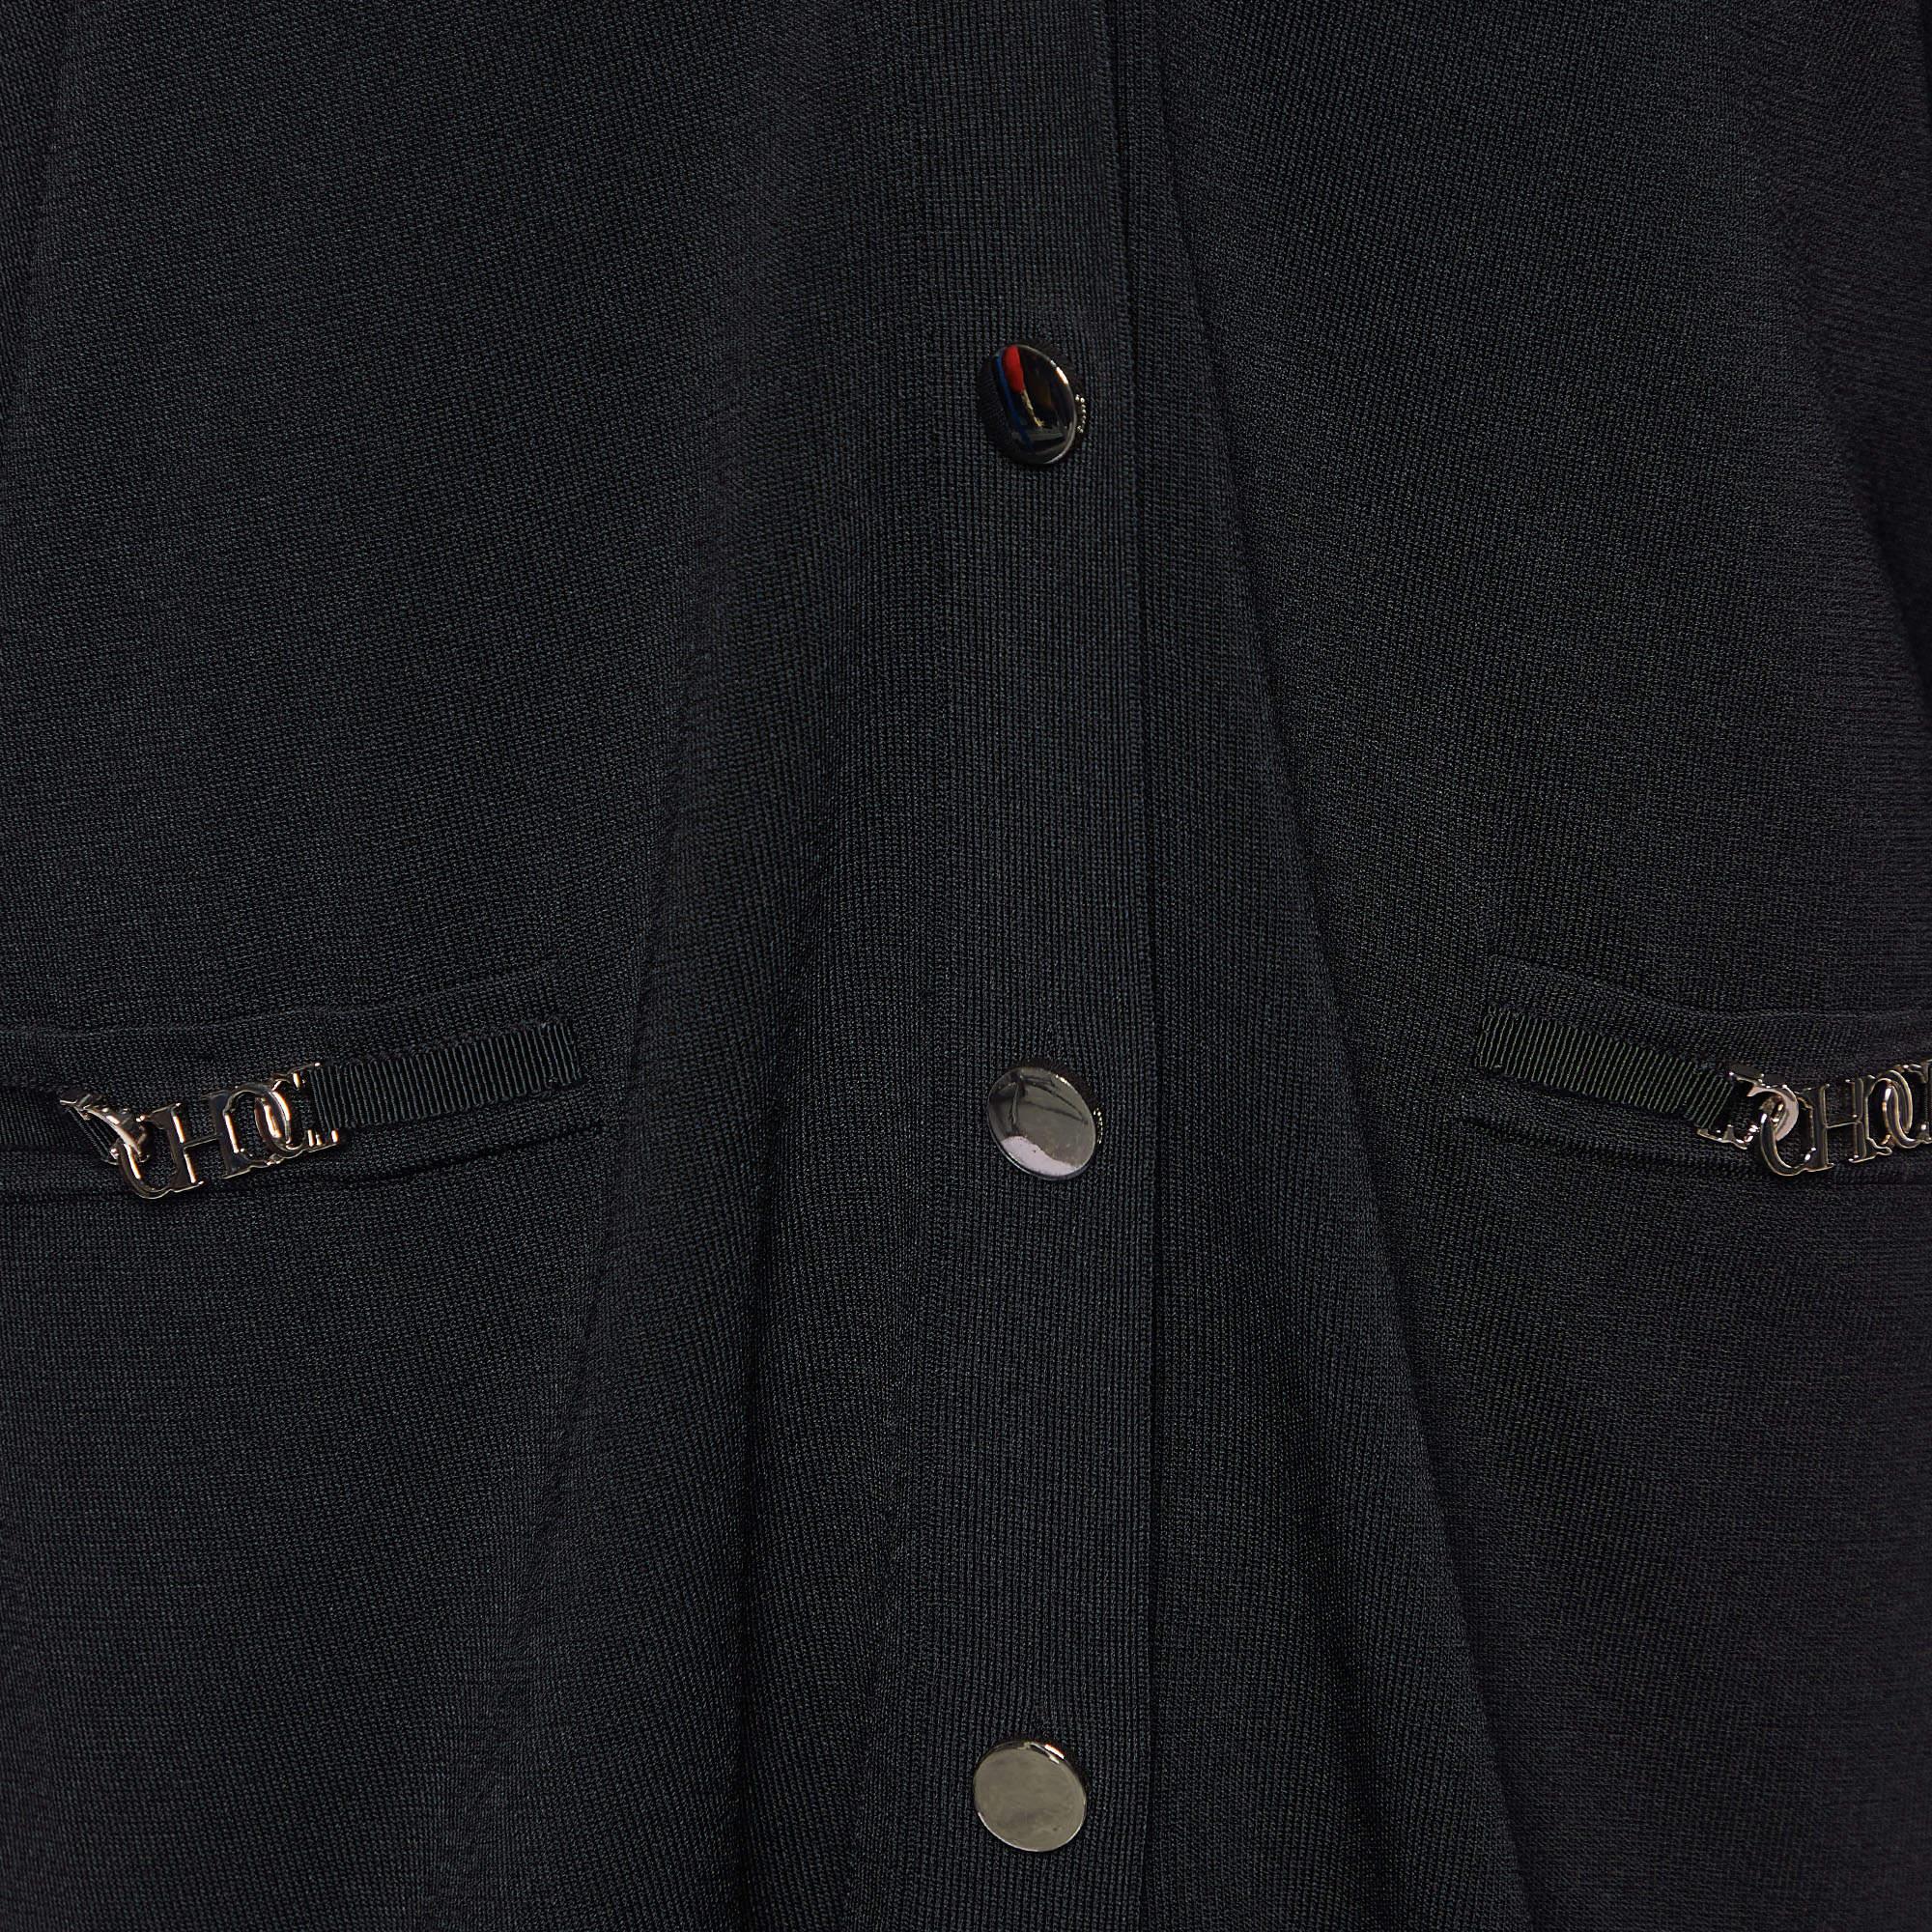 CH Carolina Herrera Black Knit Button Front Cardigan L In Excellent Condition For Sale In Dubai, Al Qouz 2